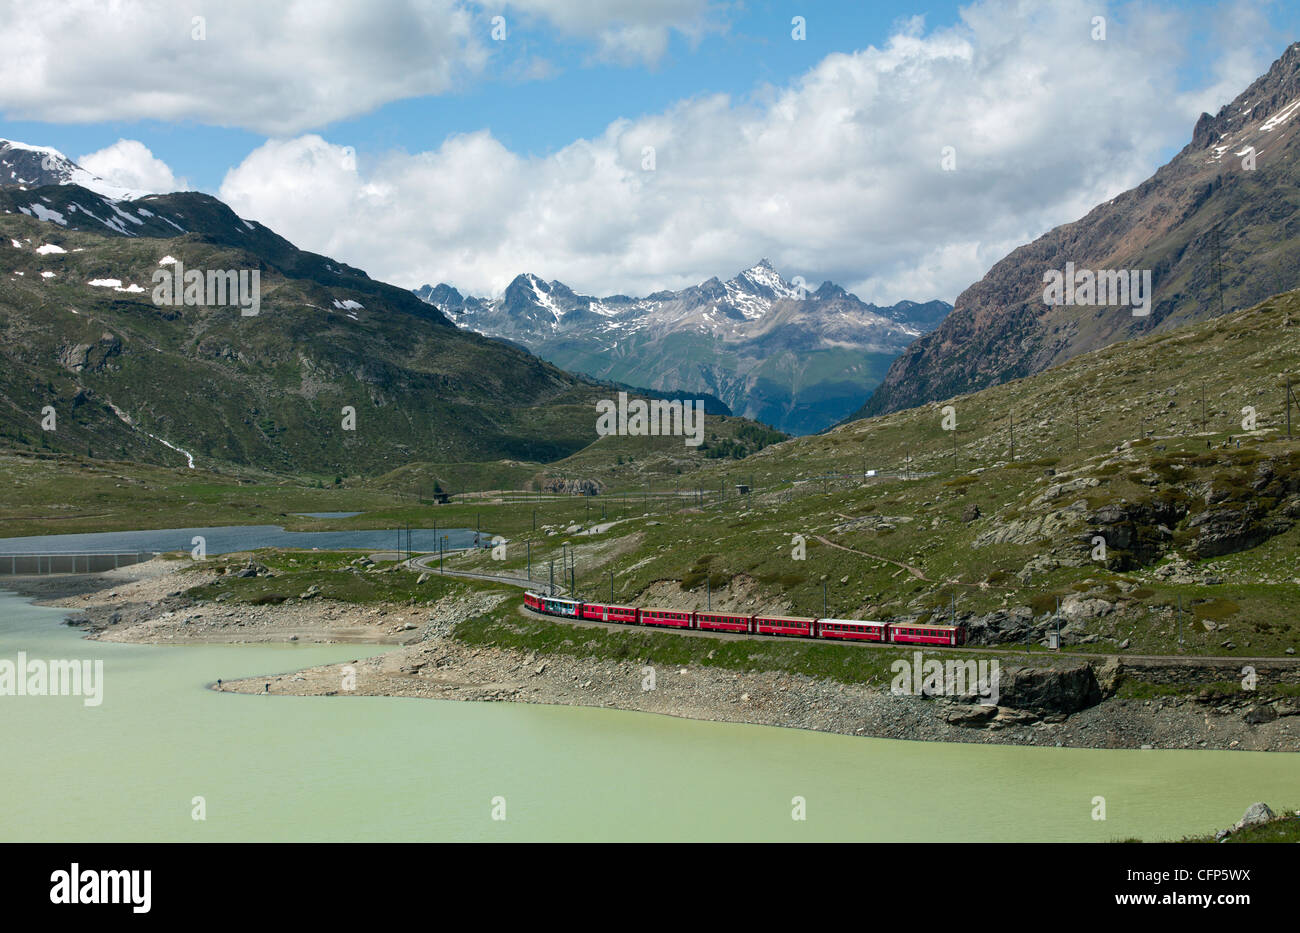 Le Glacier Express train près de Saint-moritz, Canton des Grisons, Suisse, Alpes, Europe Swiitzerland Banque D'Images